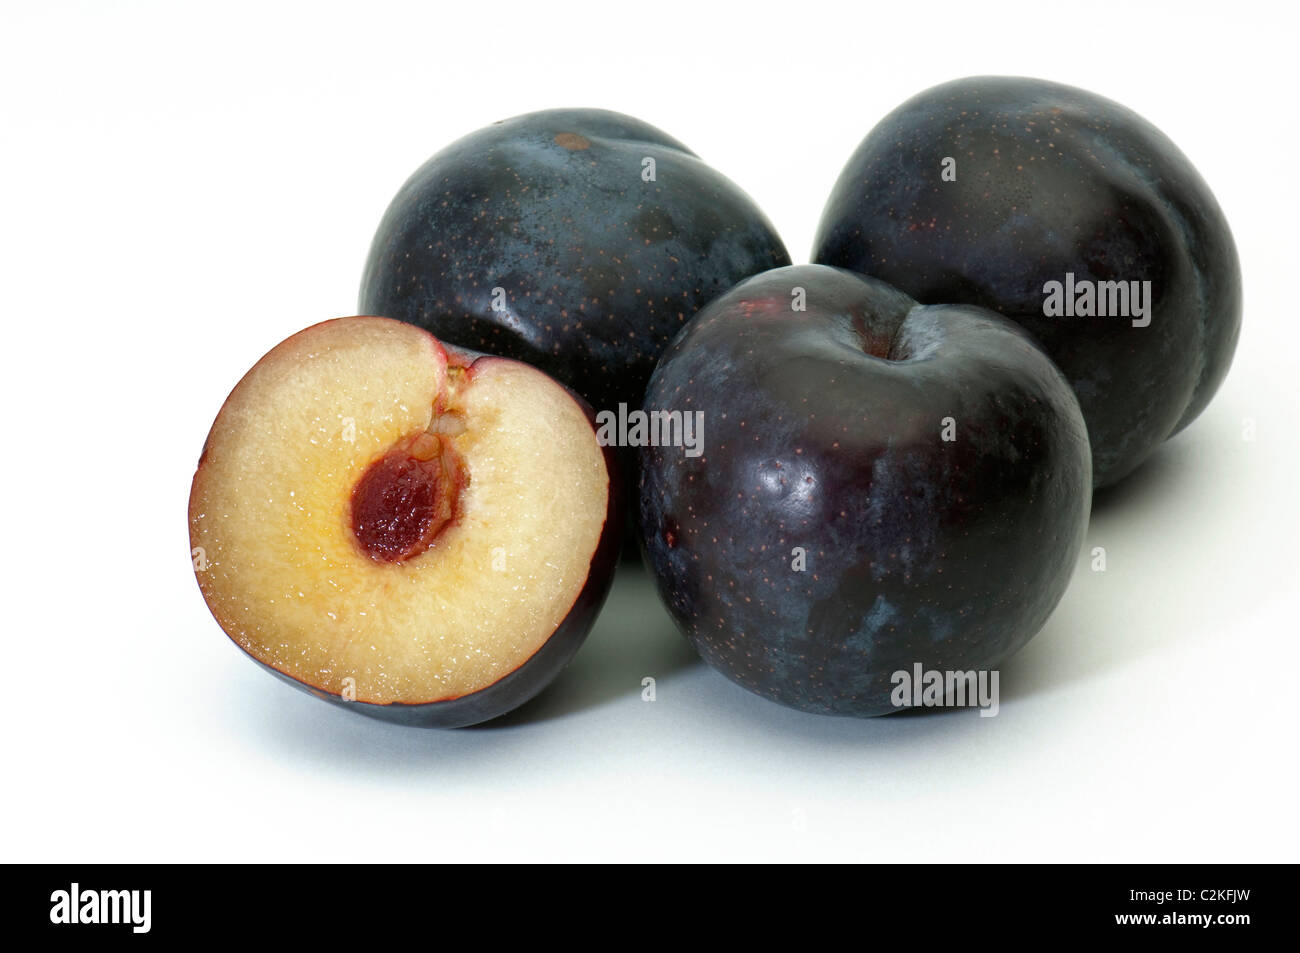 La prugna cinese, giapponese prugna (Prunus salicina), varietà: Angeleno. Frutti maturi. Studio Immagine contro uno sfondo bianco. Foto Stock